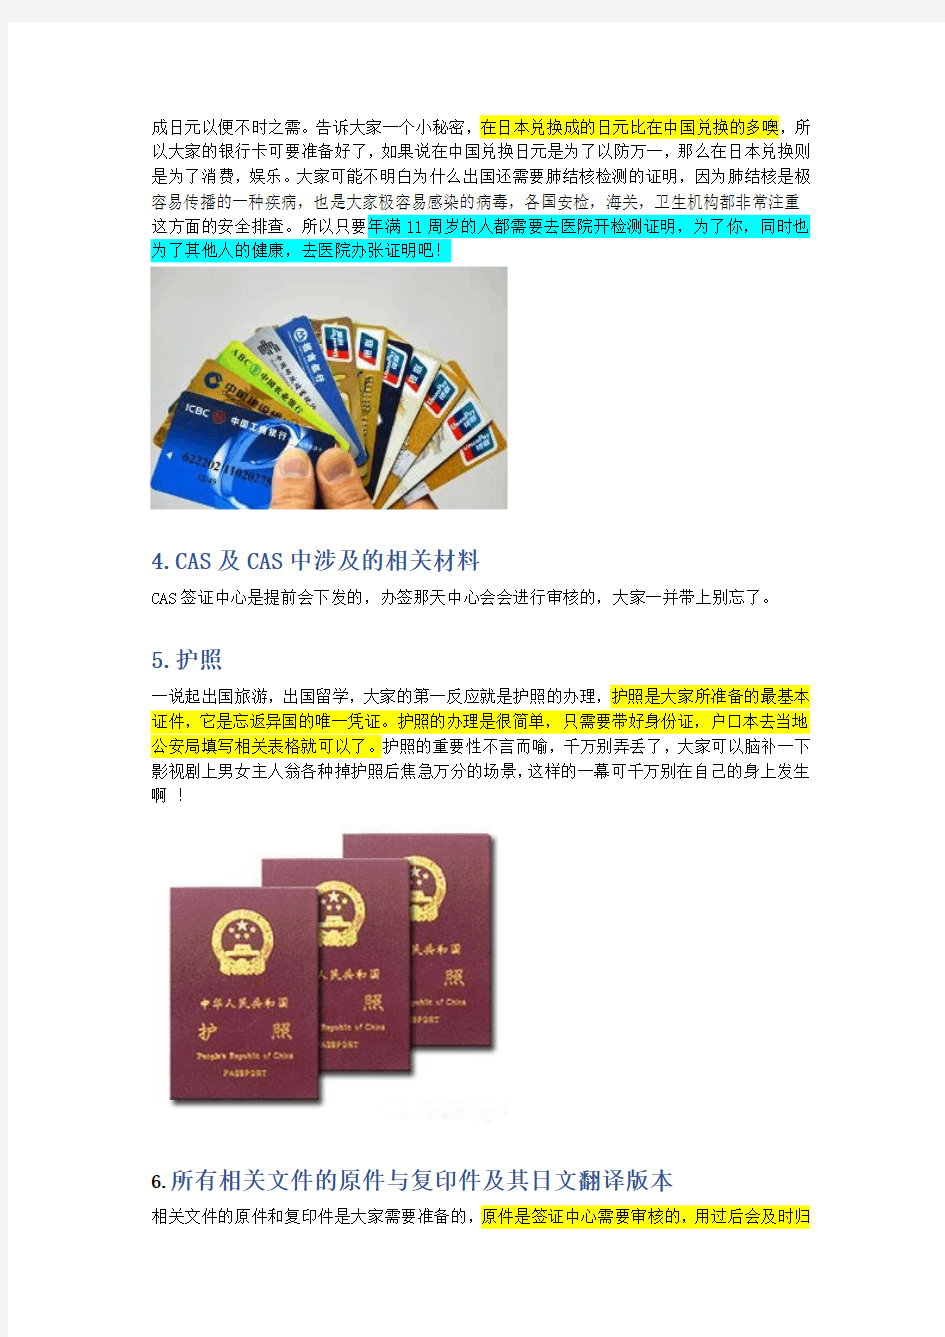 日本旅游申请签证详细步骤办理经验全程附图具体 详解!